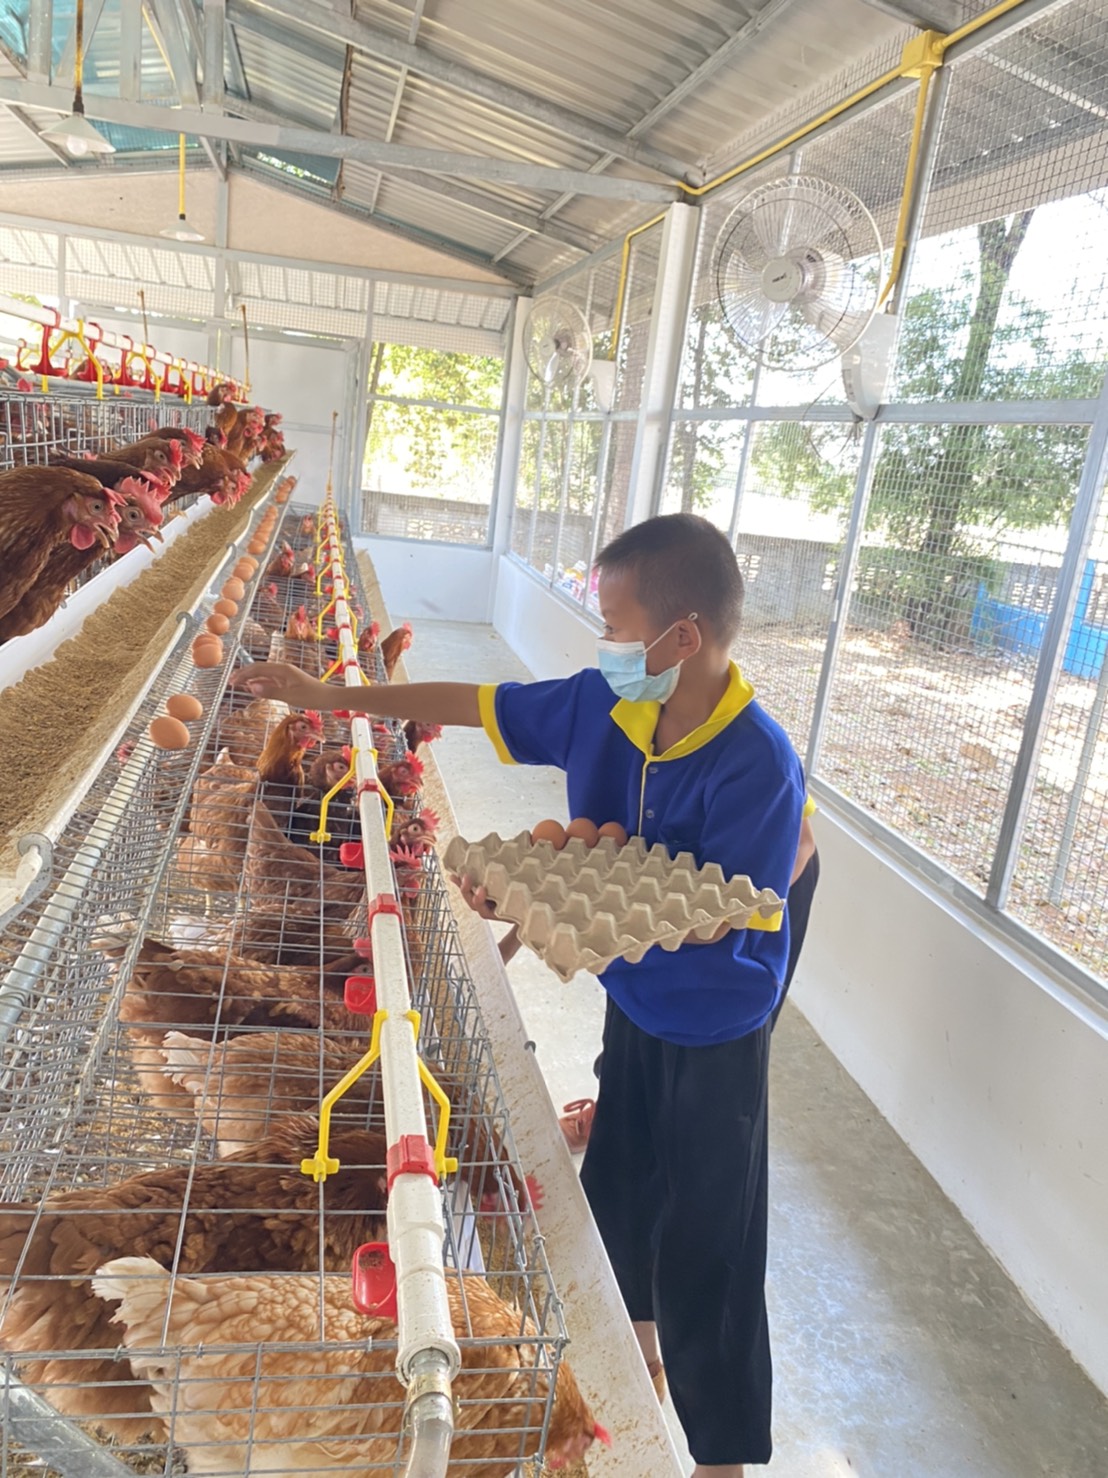 ซีพีเอฟร่วมเติมประสบการณ์ เยาวชนไทยวิถีใหม่ แหล่งเรียนรู้ ในโครงการ"เลี้ยงไก่ไข่เพื่ออาหารกลางวันนักเรียน"